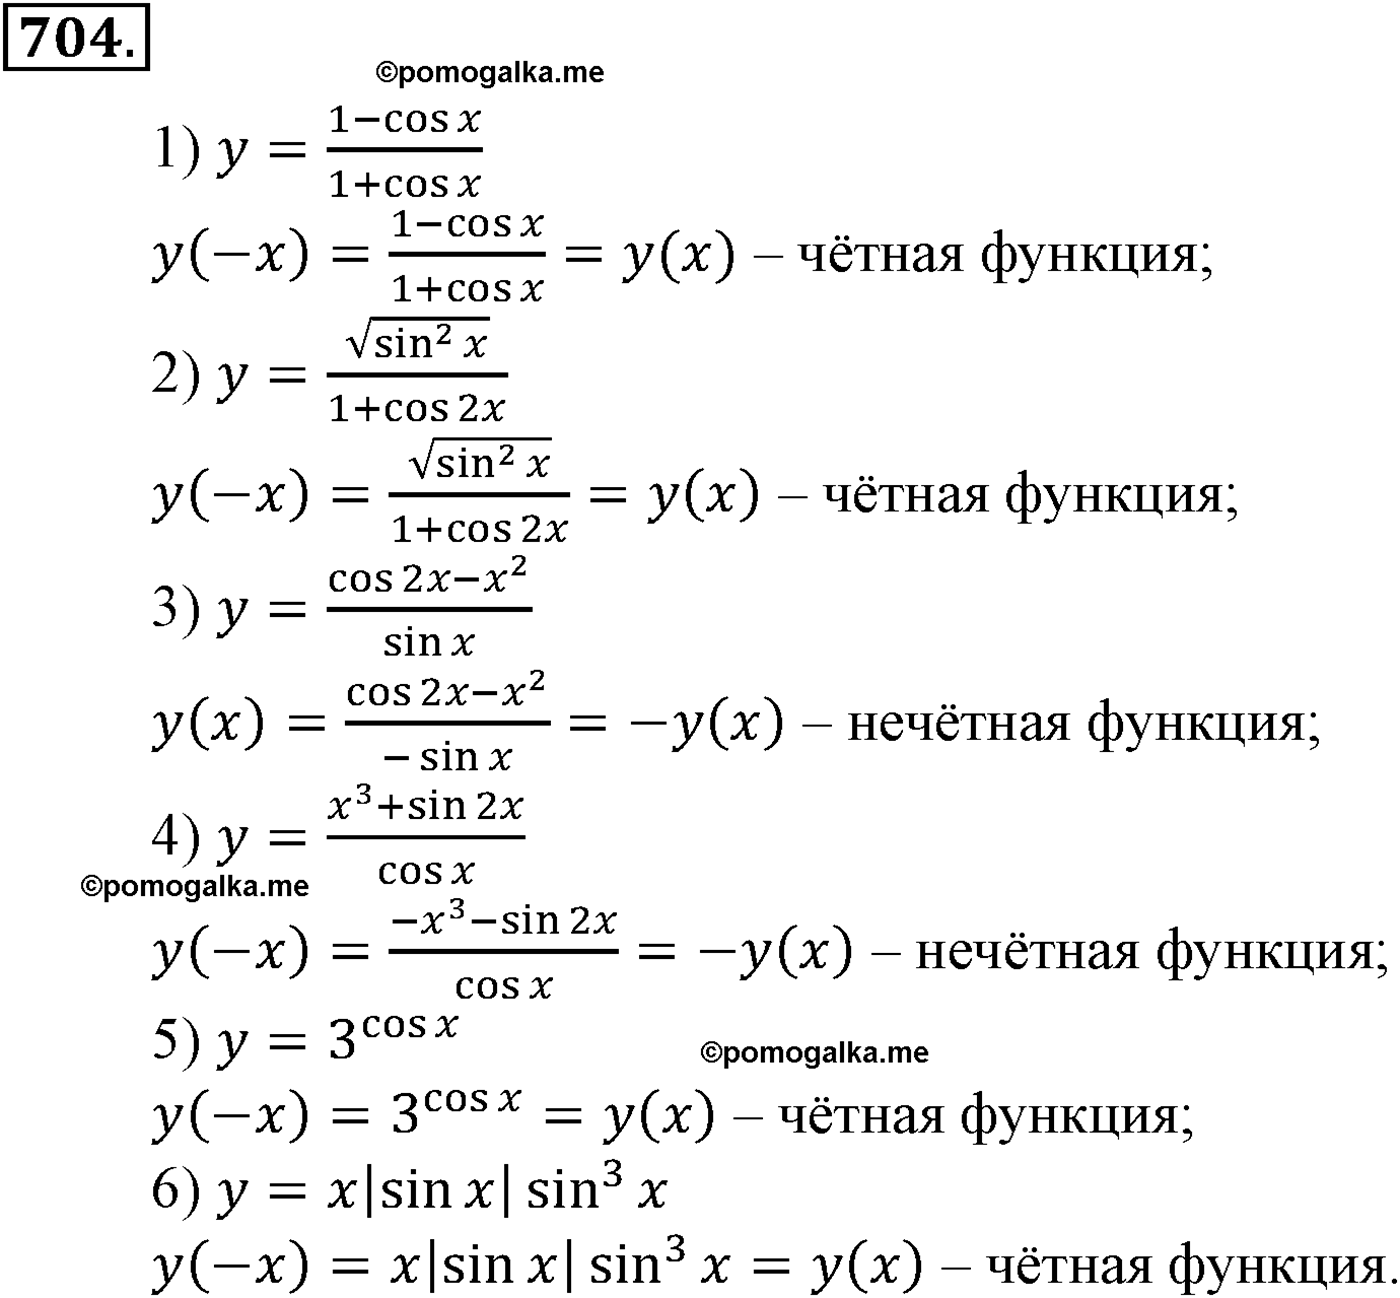 разбор задачи №704 по алгебре за 10-11 класс из учебника Алимова, Колягина